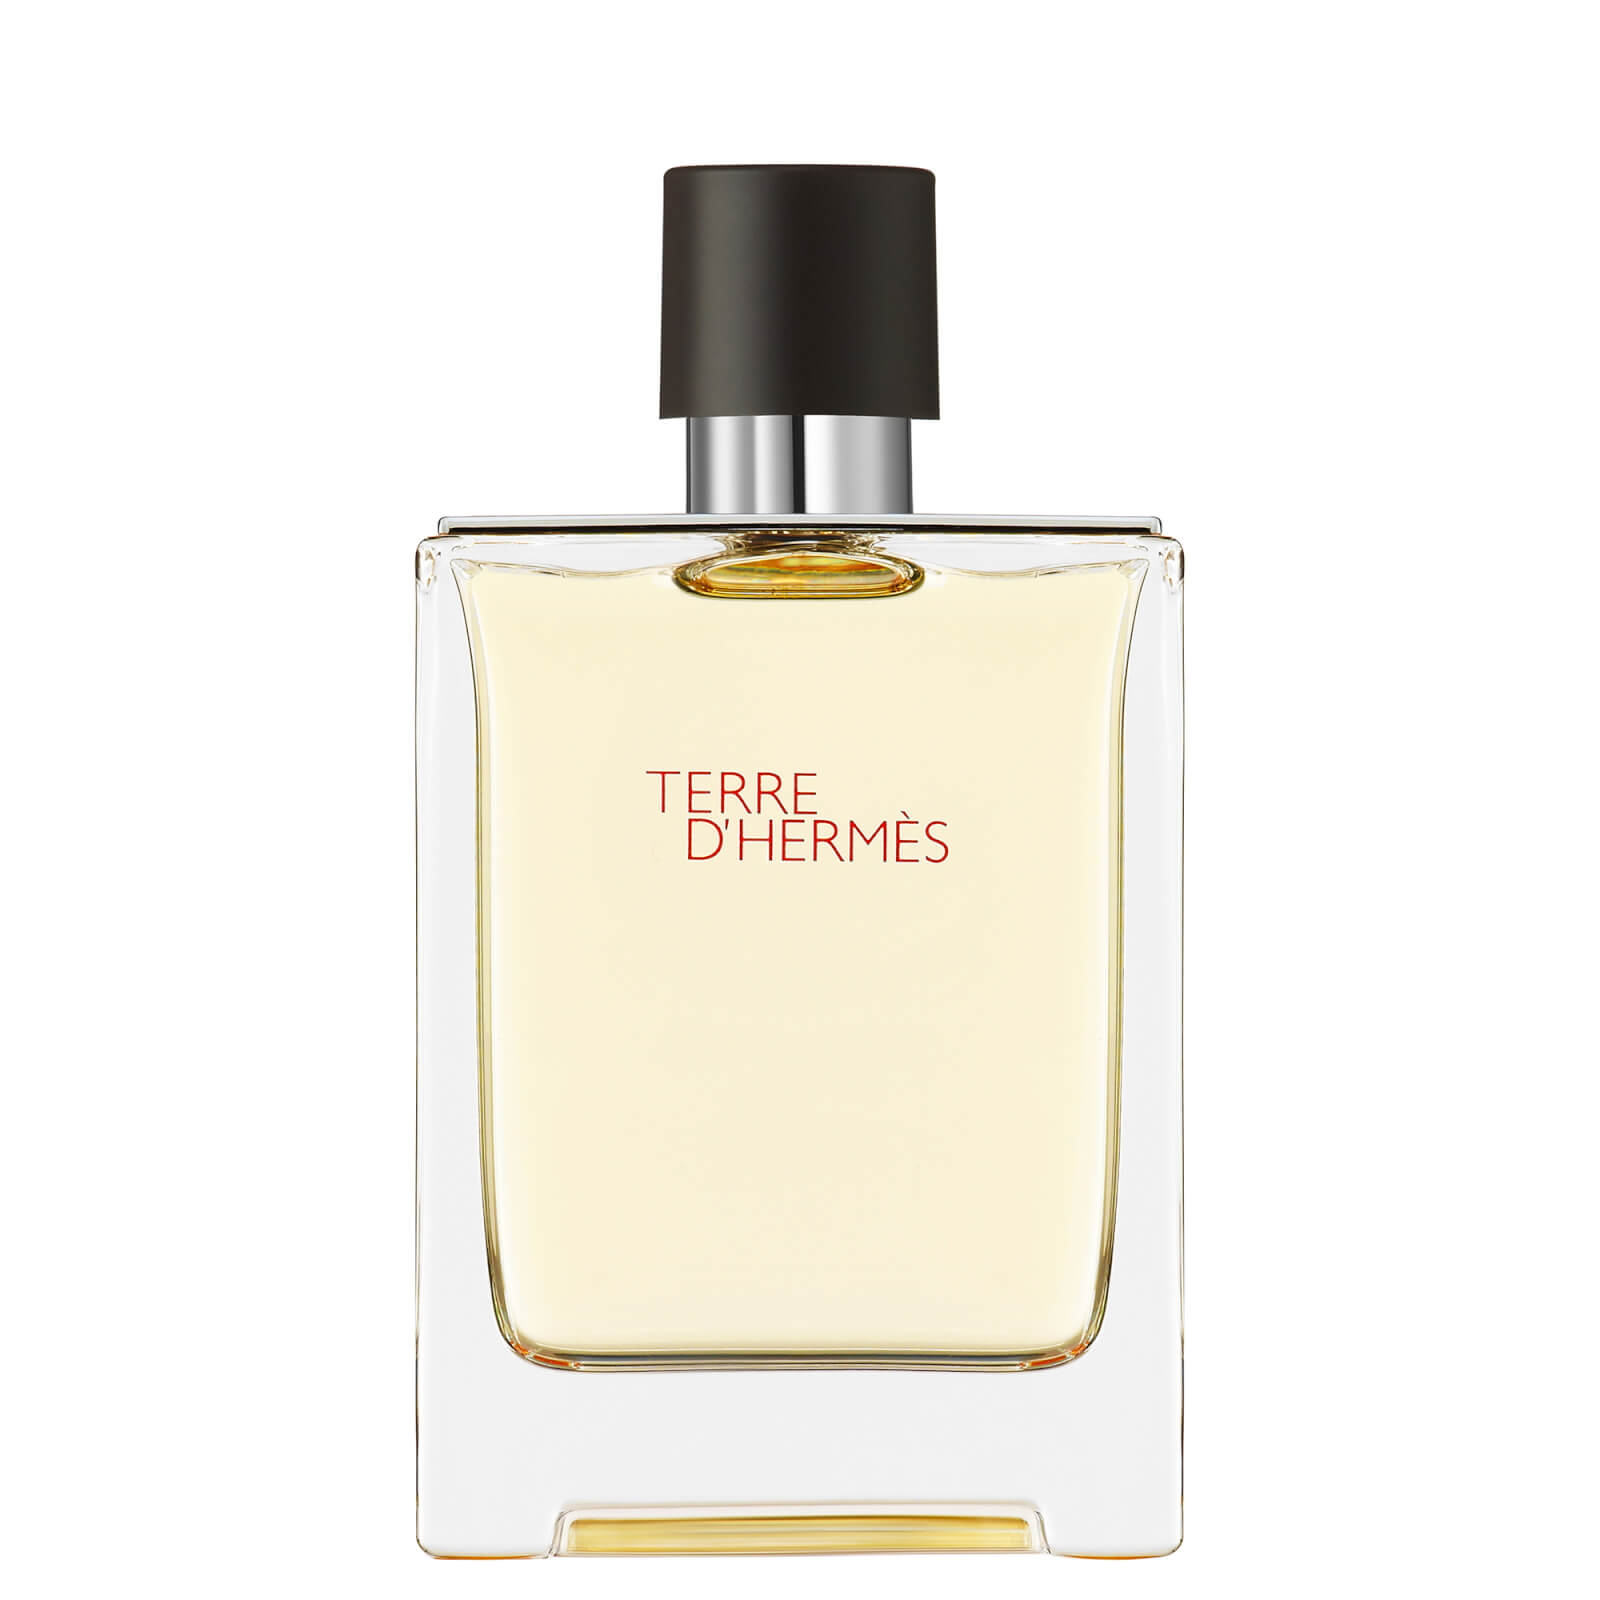 Photos - Women's Fragrance Hermes Hermès Terre d'Hermès Eau de Toilette 100ml 107188V0 